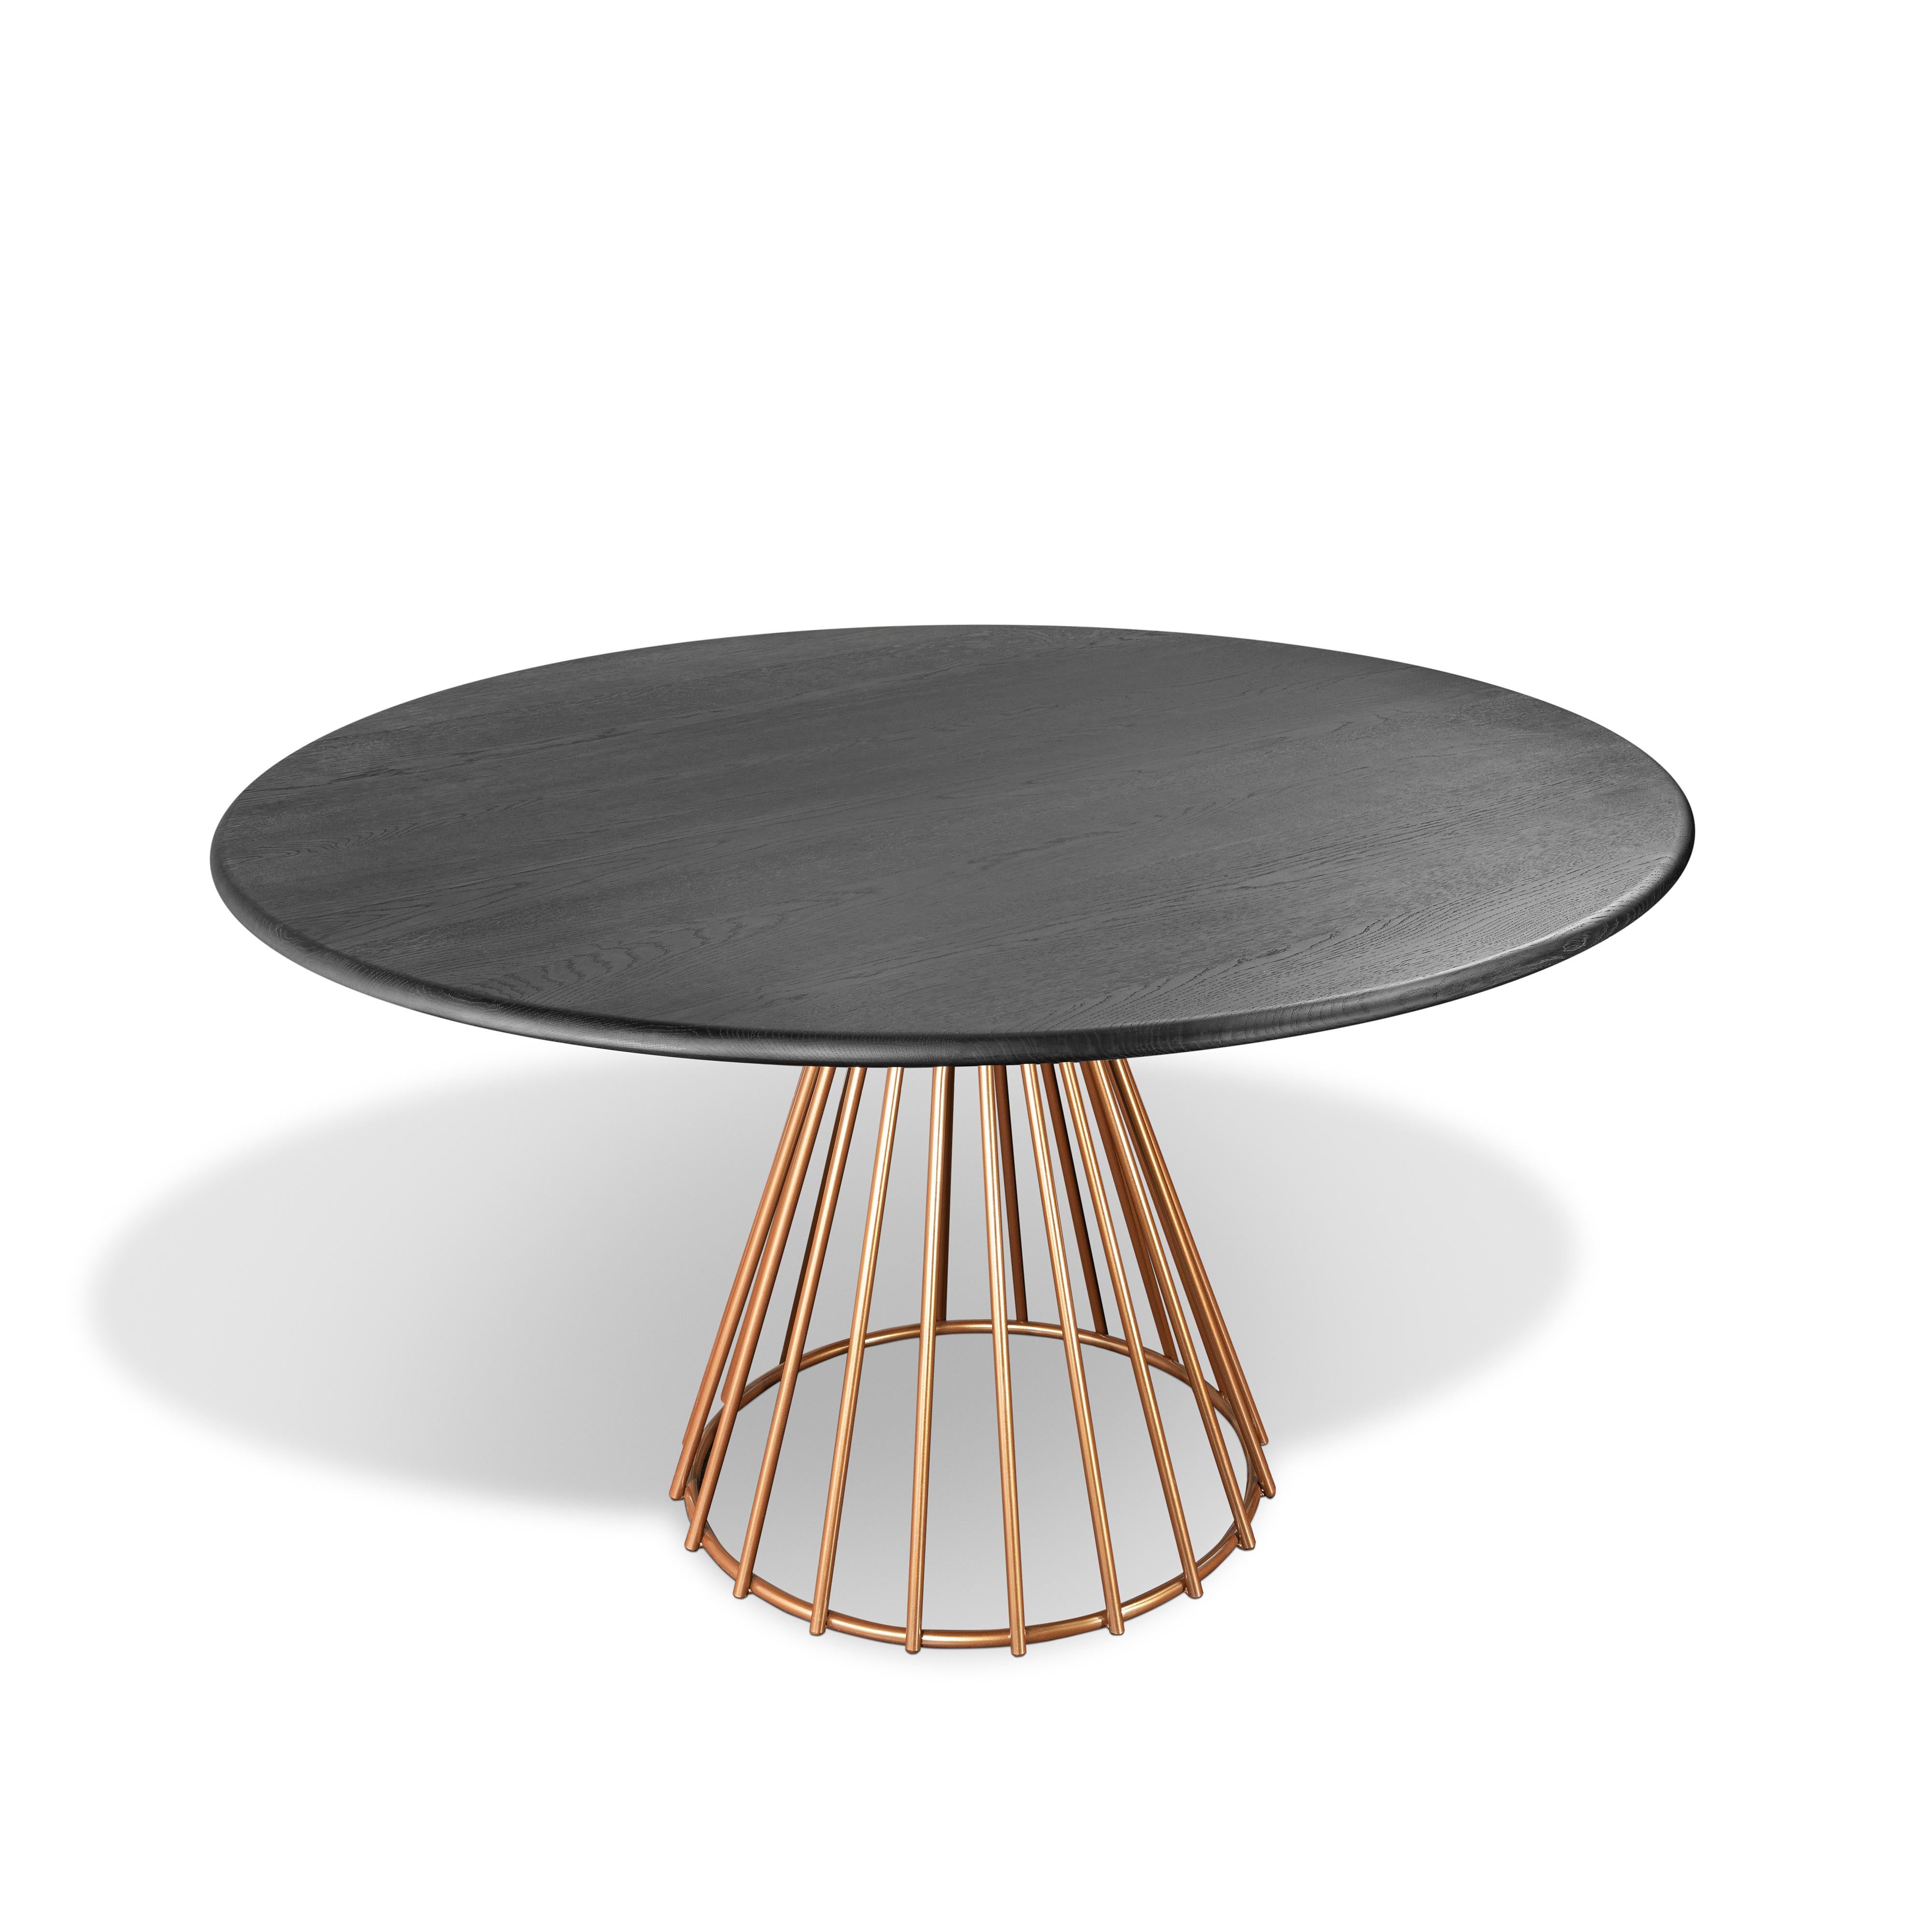 Table de salle à manger N.12 par Timbart
Dimensions : D 120 x H 75 cm
MATERIAL : Bois de chêne massif, métal fritté bronze, teinture réactive Timbart.

Timbart est un atelier d'ébénisterie hongrois spécialisé dans les parquets, les meubles sur